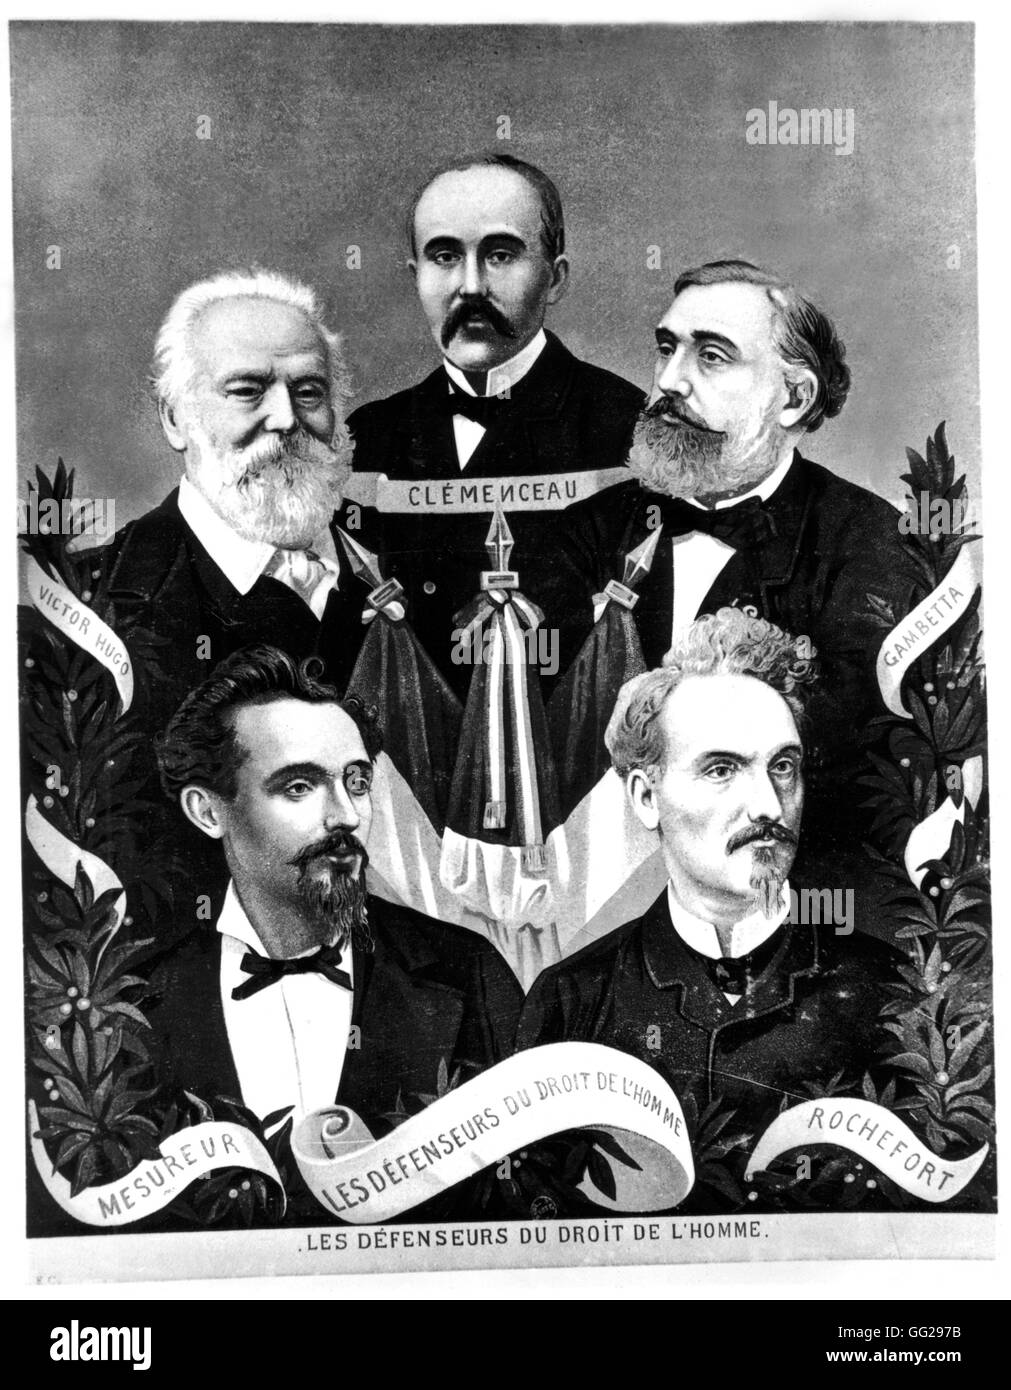 Los defensores de los derechos humanos: Clemenceau, Víctor Hugo Gambetta, Mesureur y Rochefort 1871 Francia Foto de stock